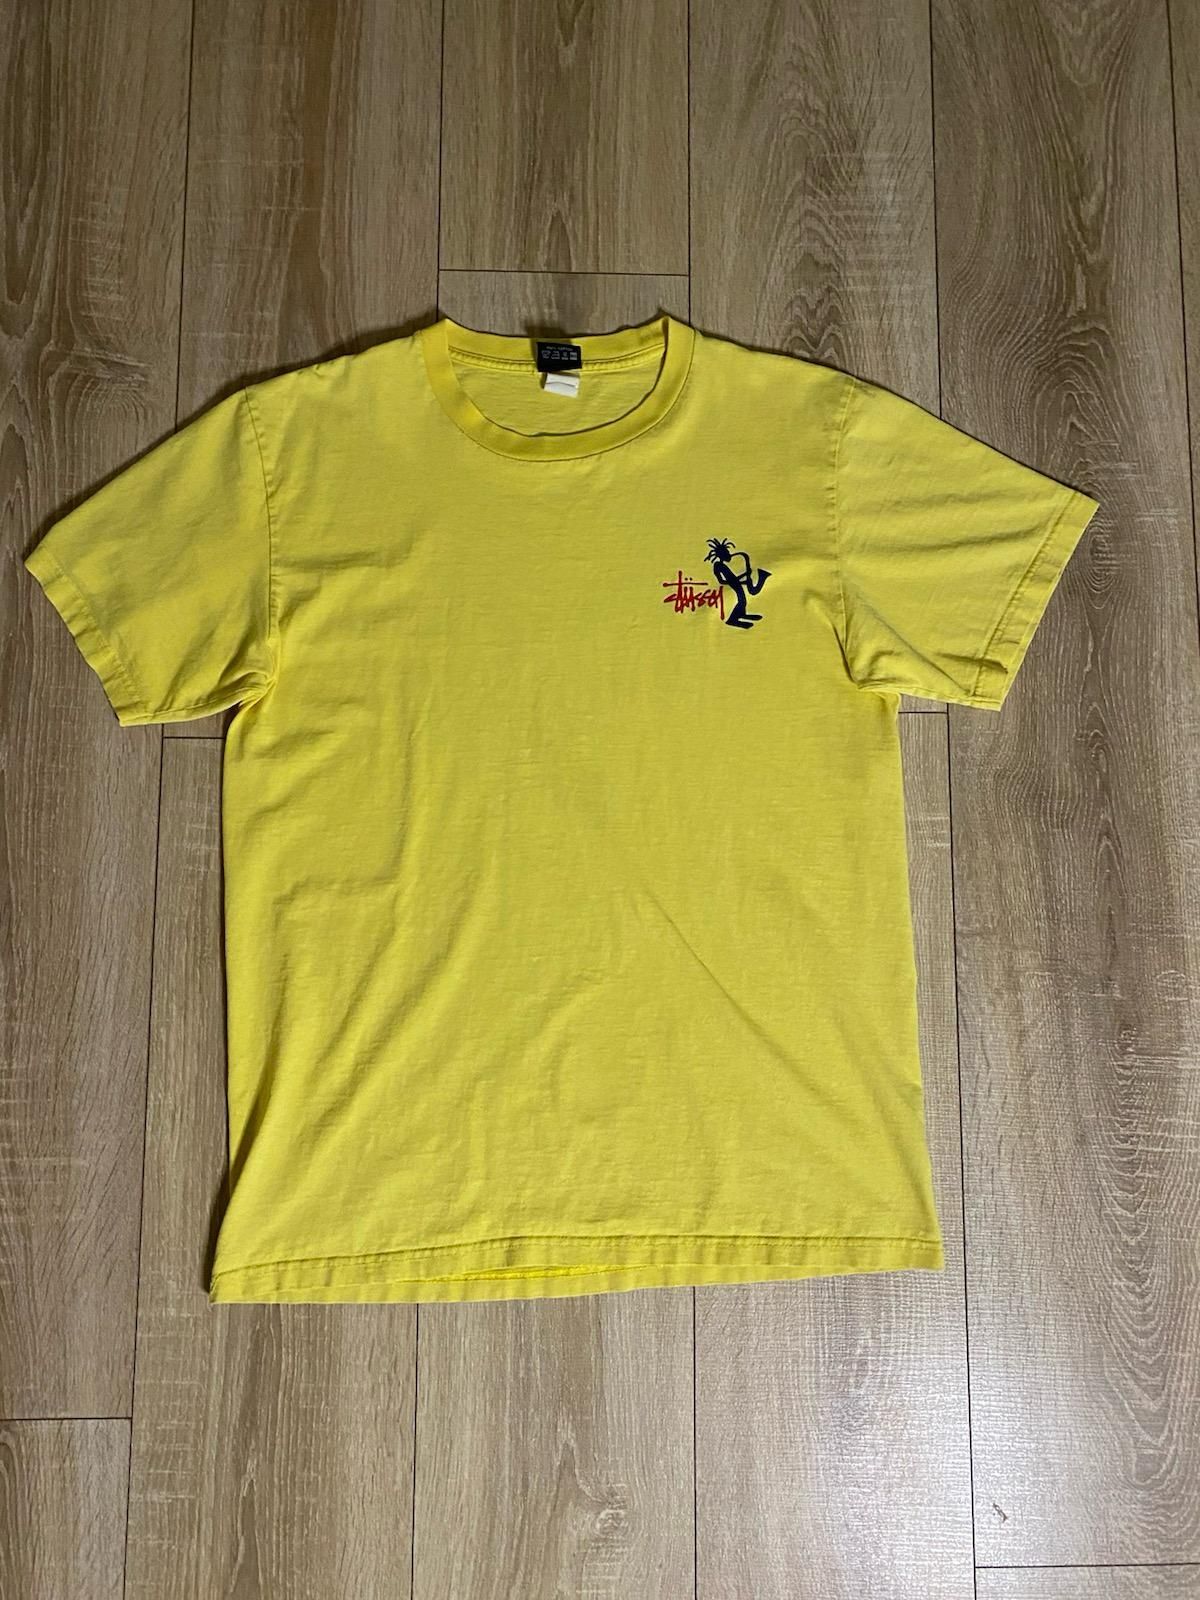 Koszulka T-shirt Stussy Stüssy Outdoor lata 90. Jazzman. Żółta. L